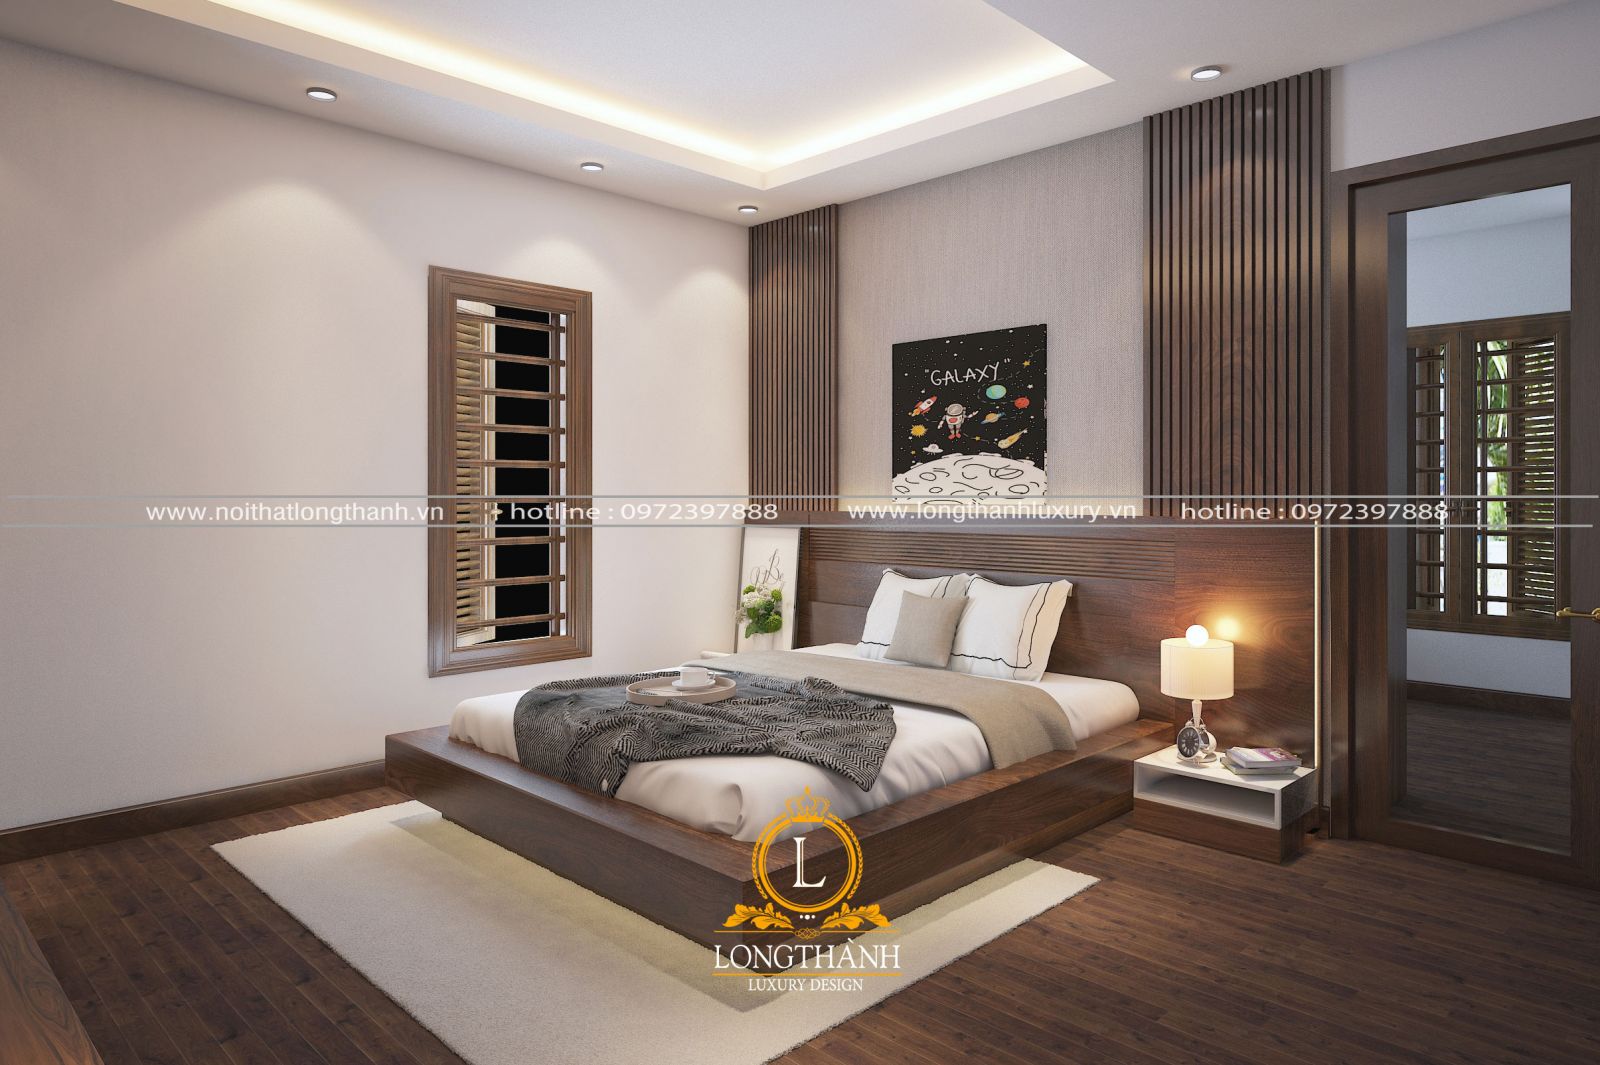 Lựa chọn sàn nhà trong phòng ngủ Master bằng gỗ hoặc lót thảm sẽ rất tốt cho sức khỏe